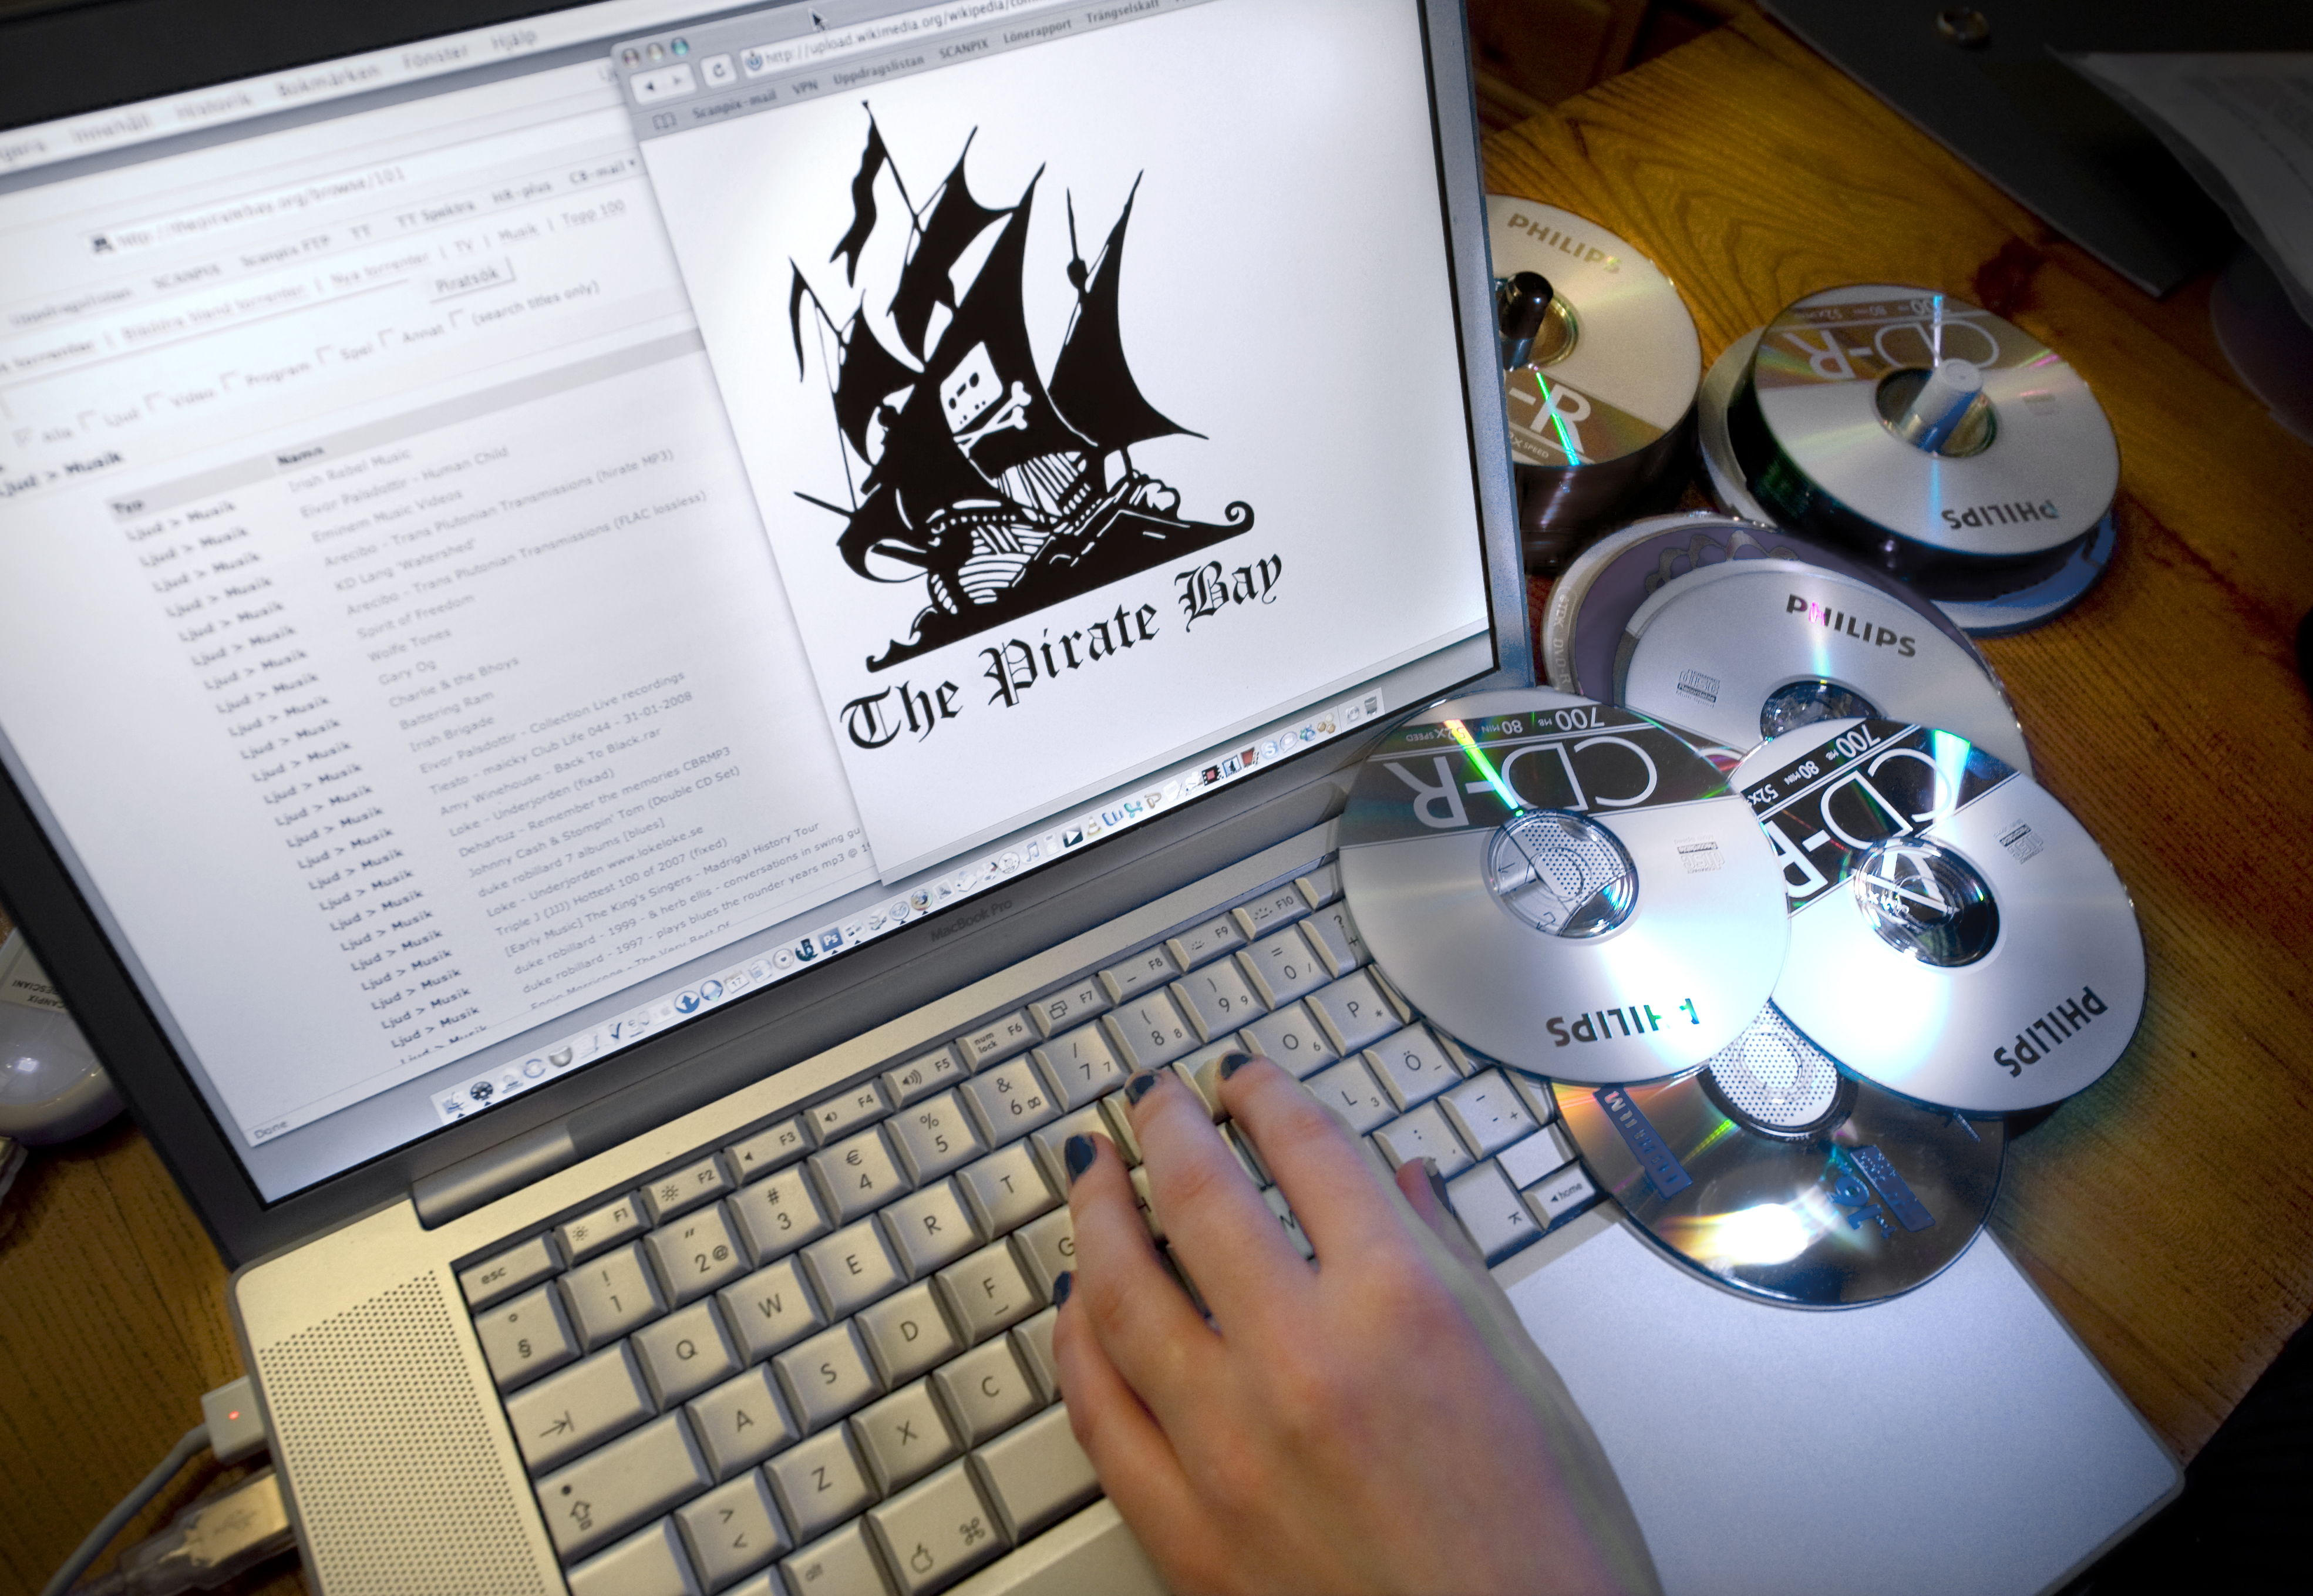 Enligt Tankafetast är man den näst största torrentsidan efter The Pirate Bay.